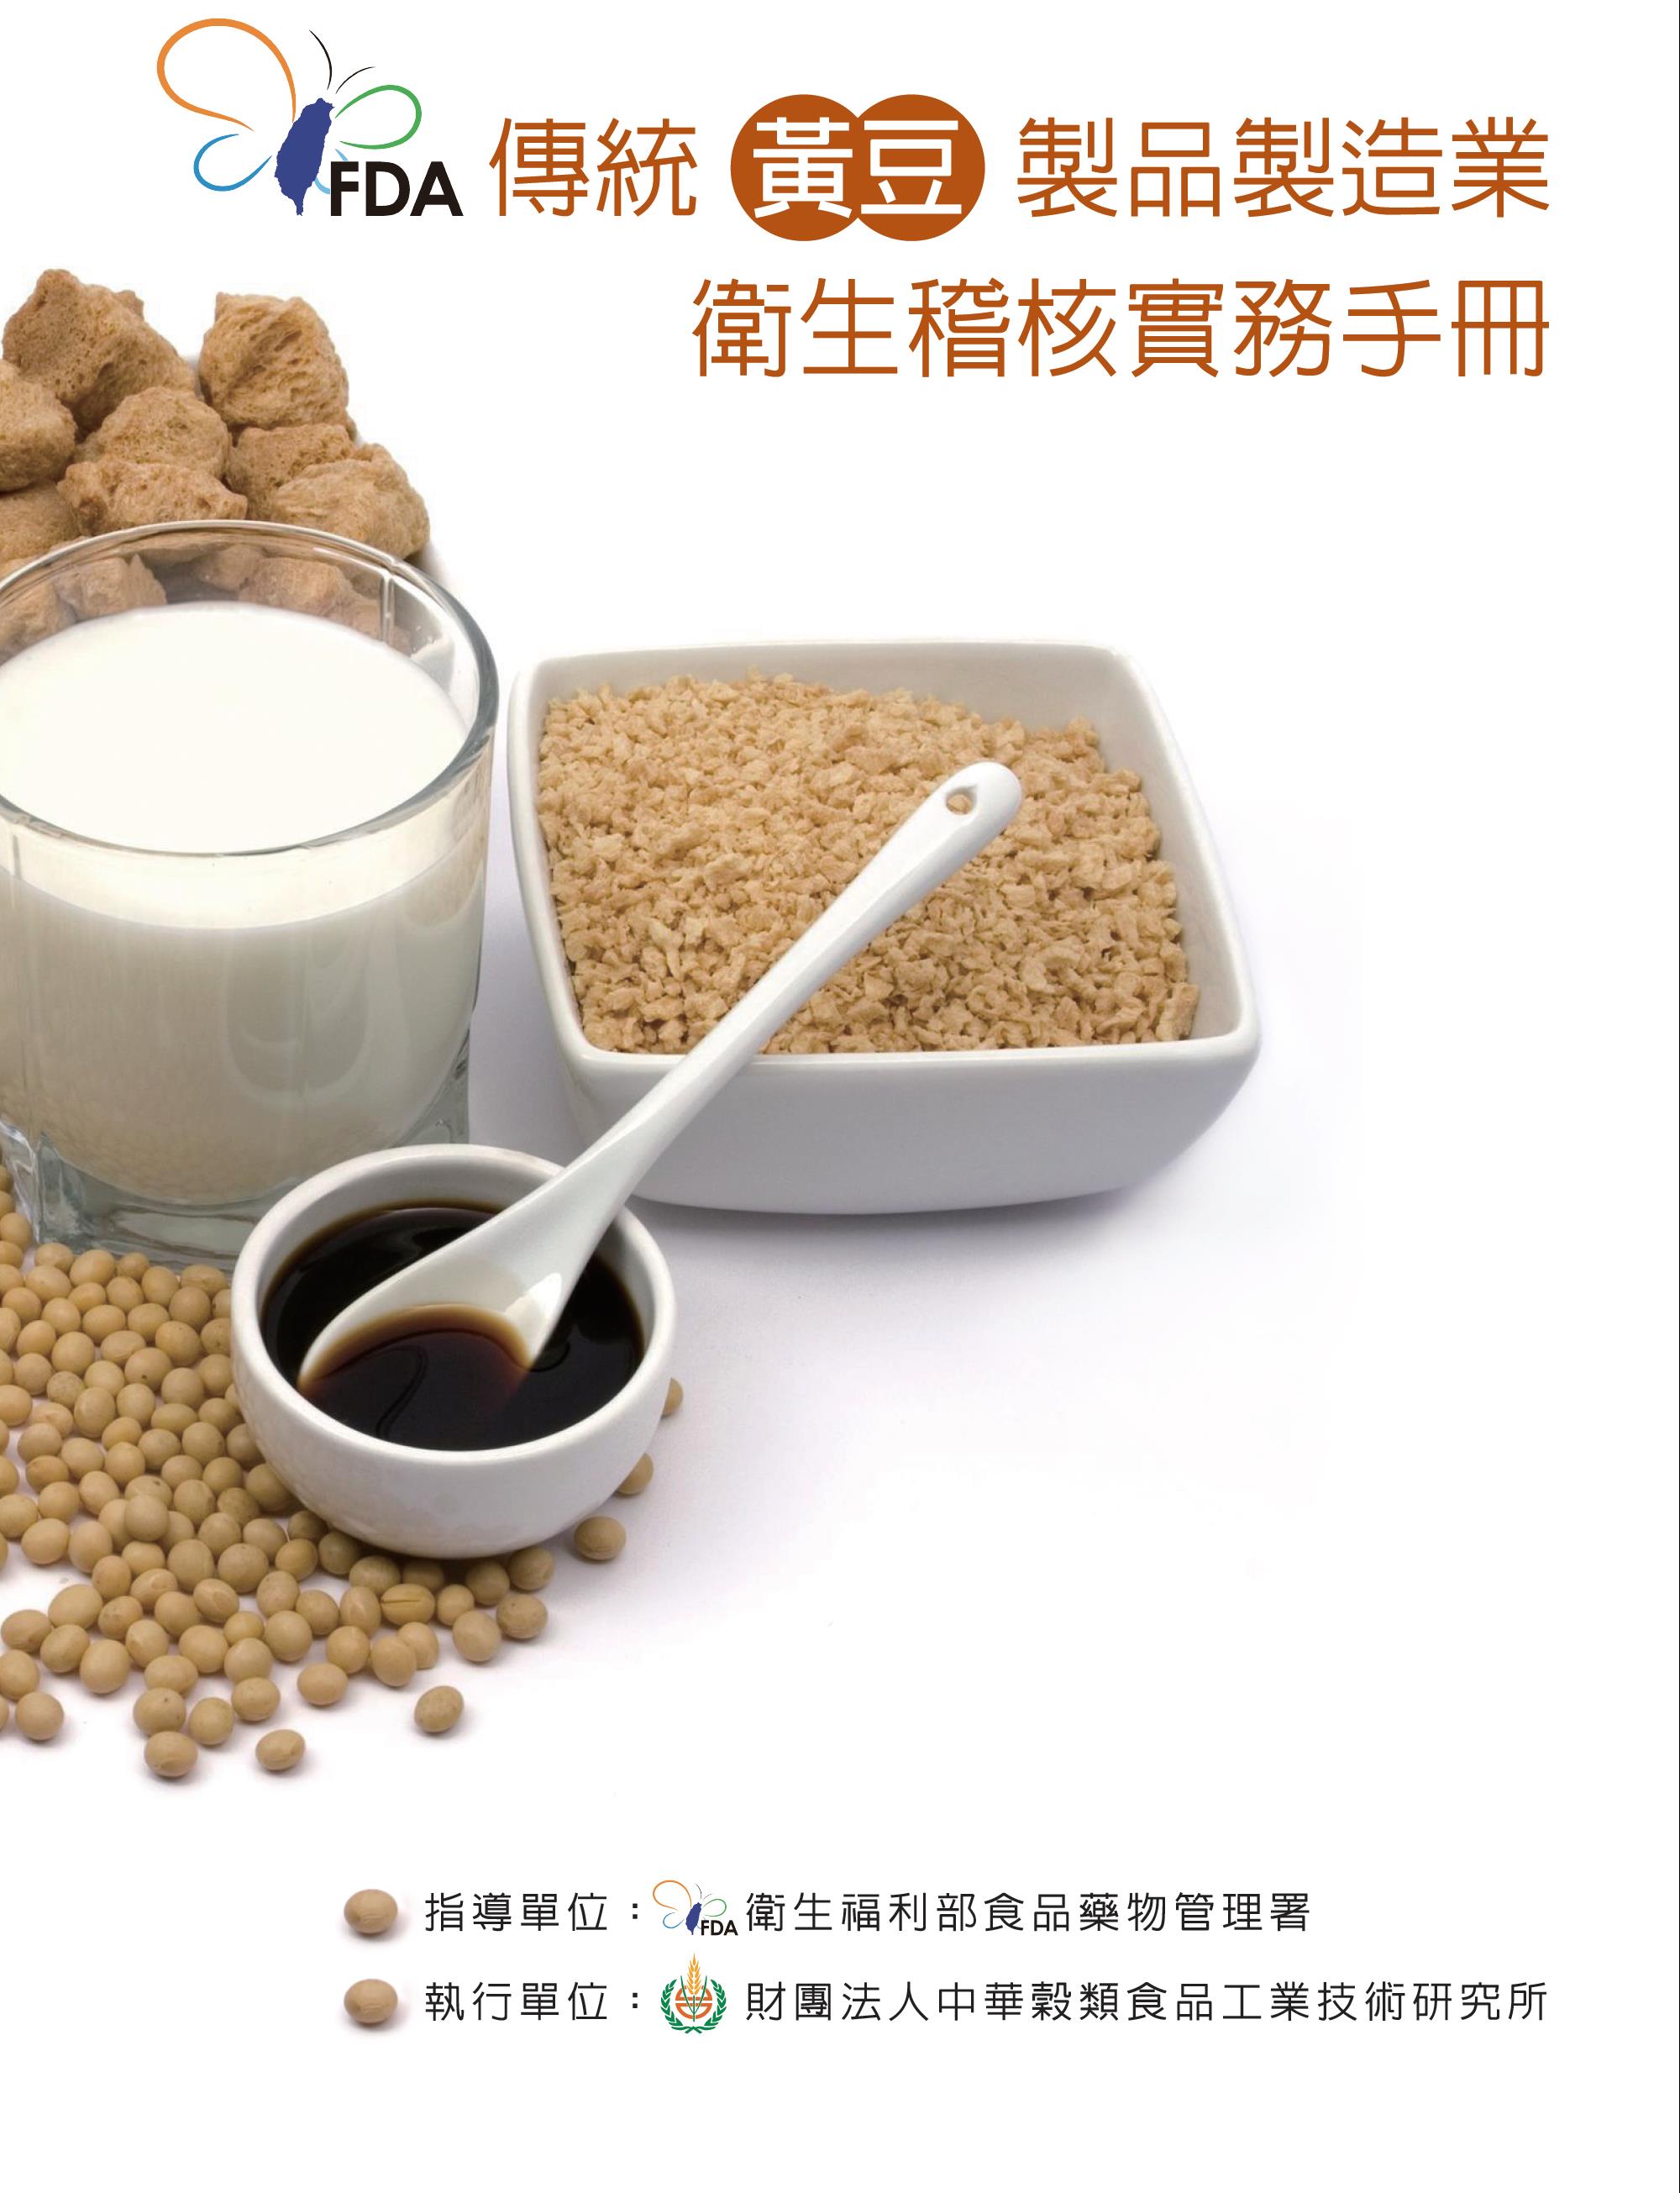 傳統黃豆製品製造業衛生稽核實務手冊